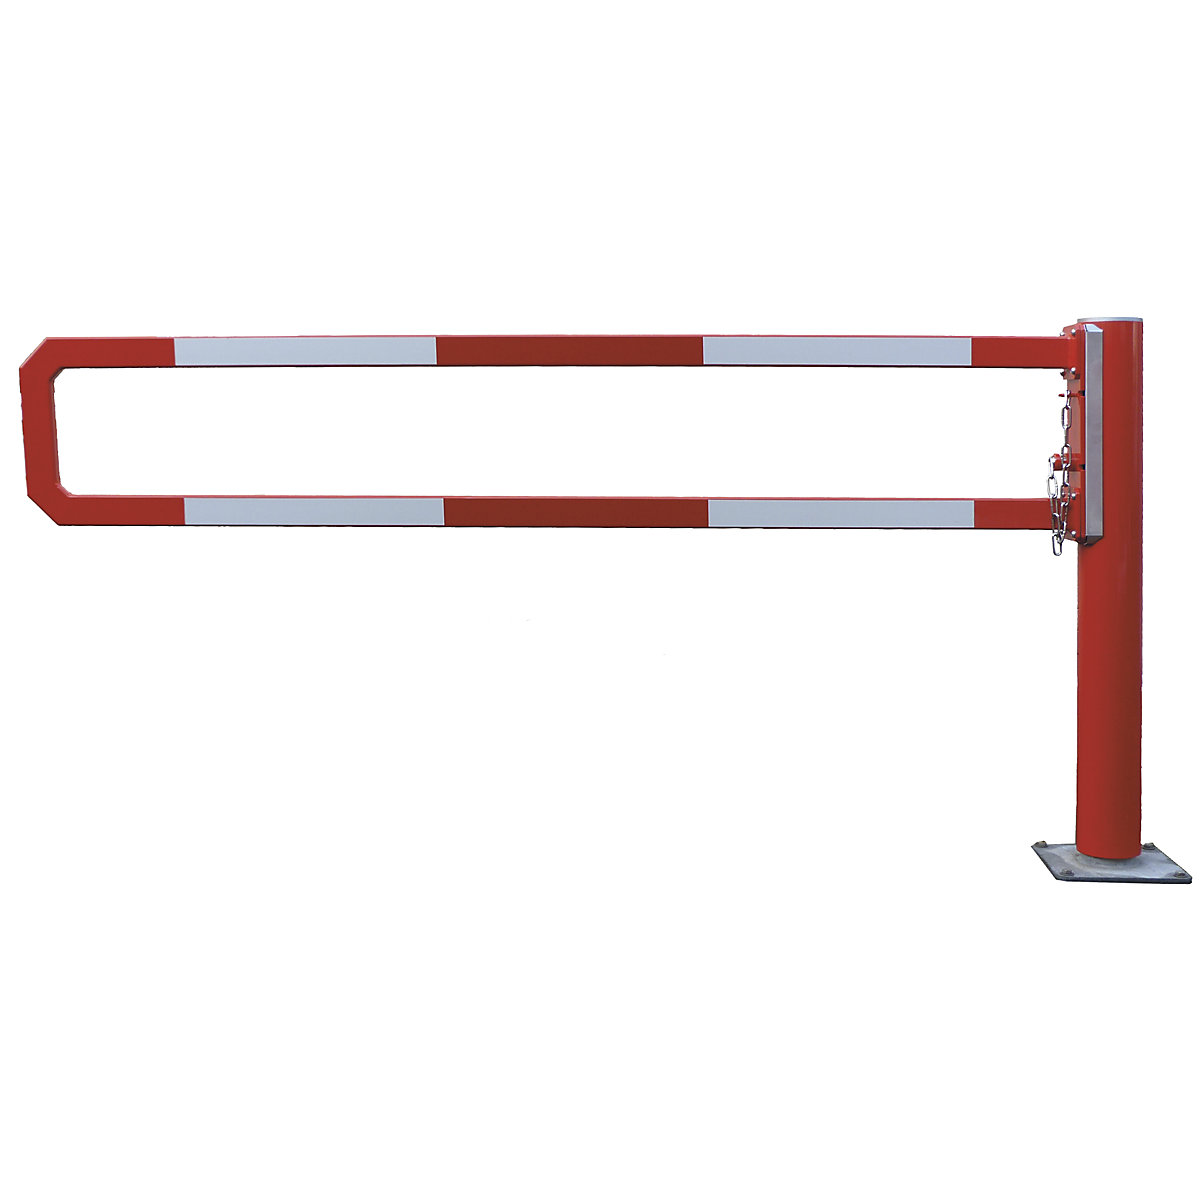 Mannus – Sbarramento girevole, lunghezza sbarra 2 m, zincatura a fuoco, verniciatura a polvere aggiuntiva in rosso